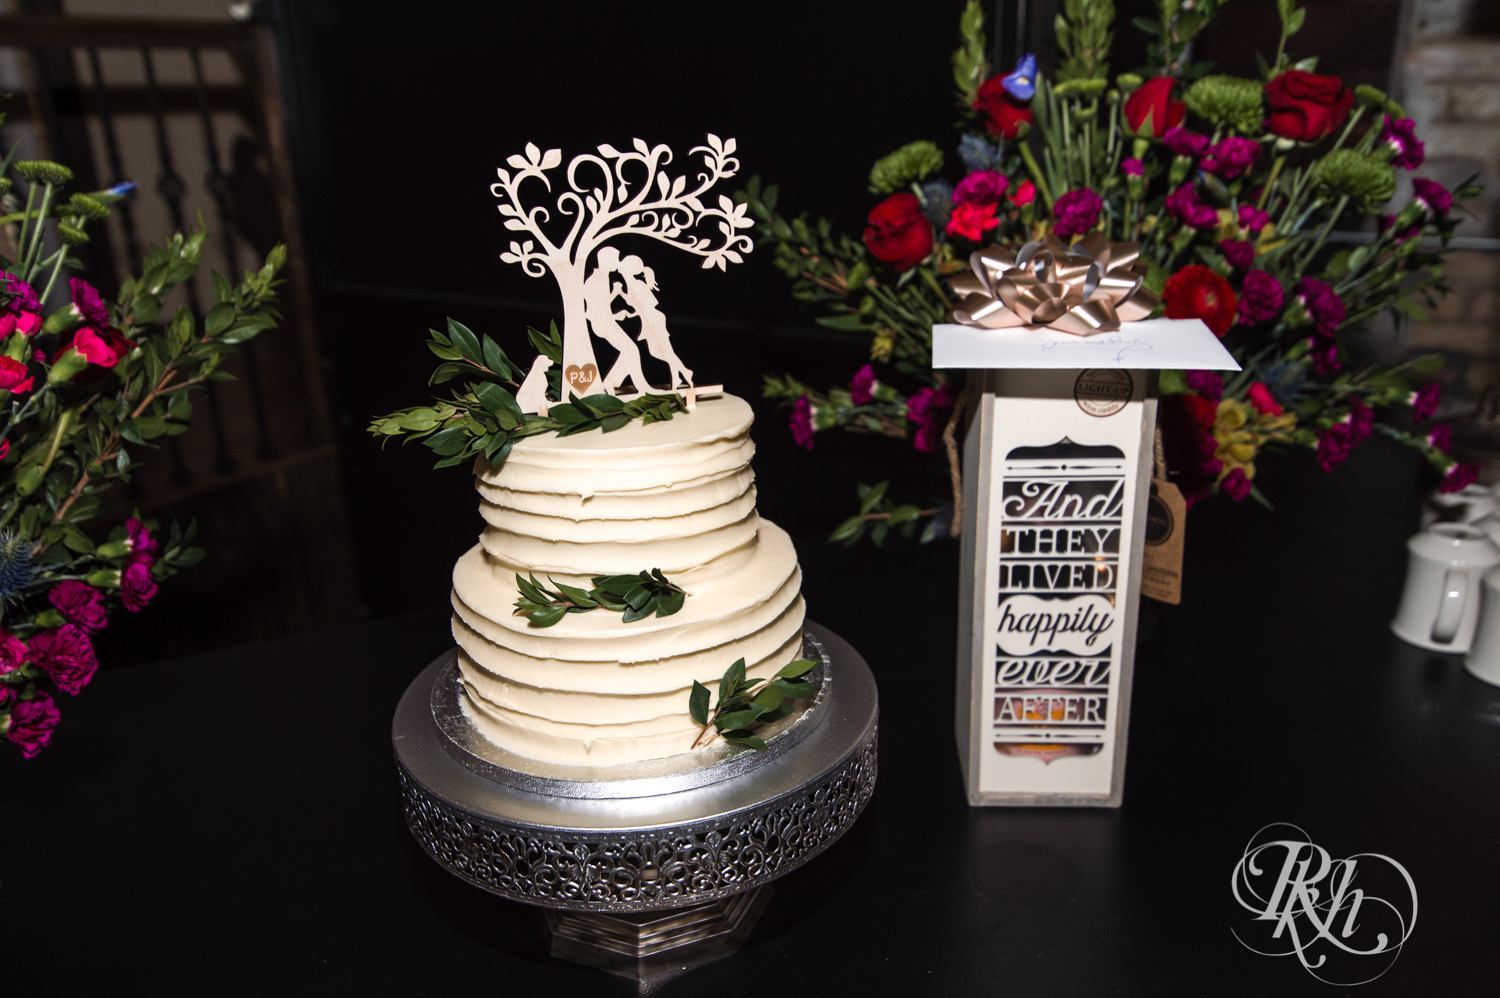 Wedding cake at Kellerman's Event Center in White Bear Lake, Minnesota.